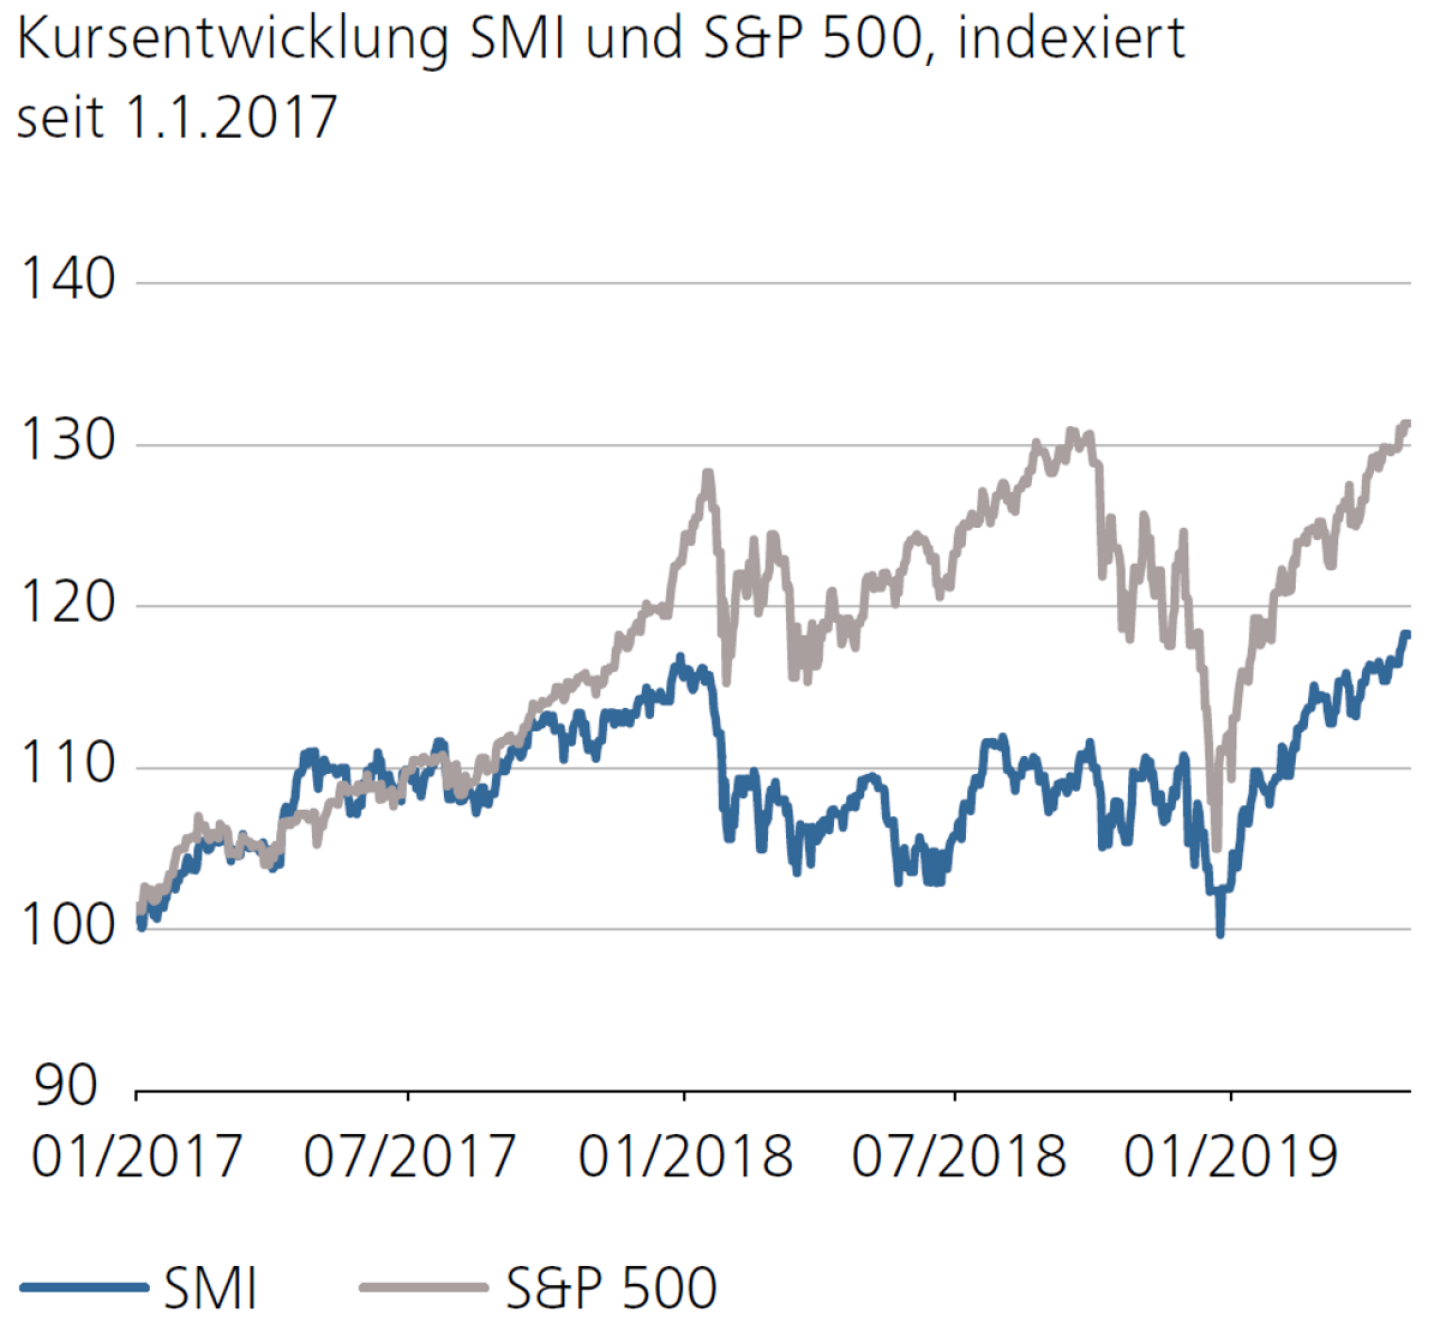 Kursentwicklung SMI und S&P 500, indexiert seit 1.1.2017